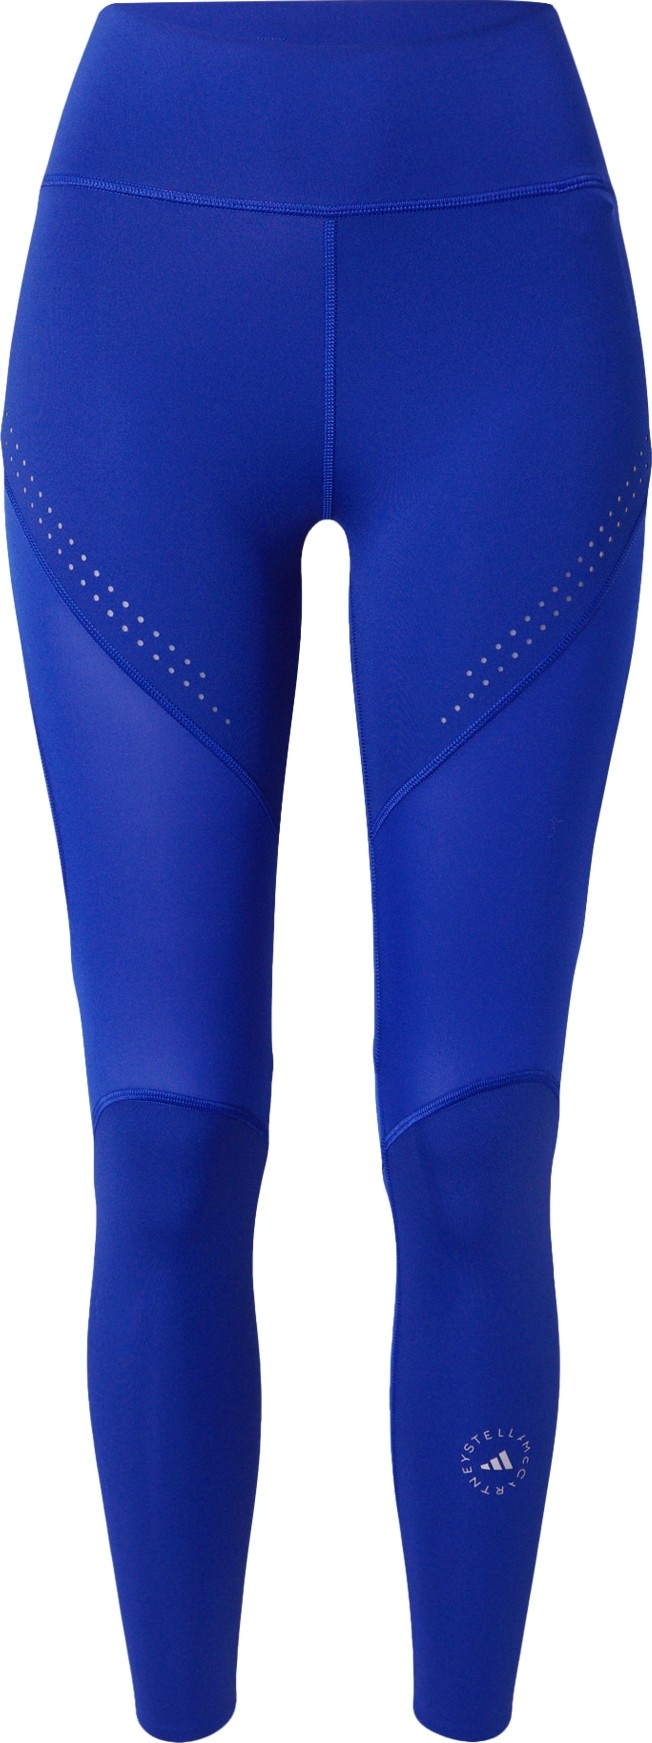 Sportovní kalhoty 'Truepurpose Optime' adidas by stella mccartney modrá